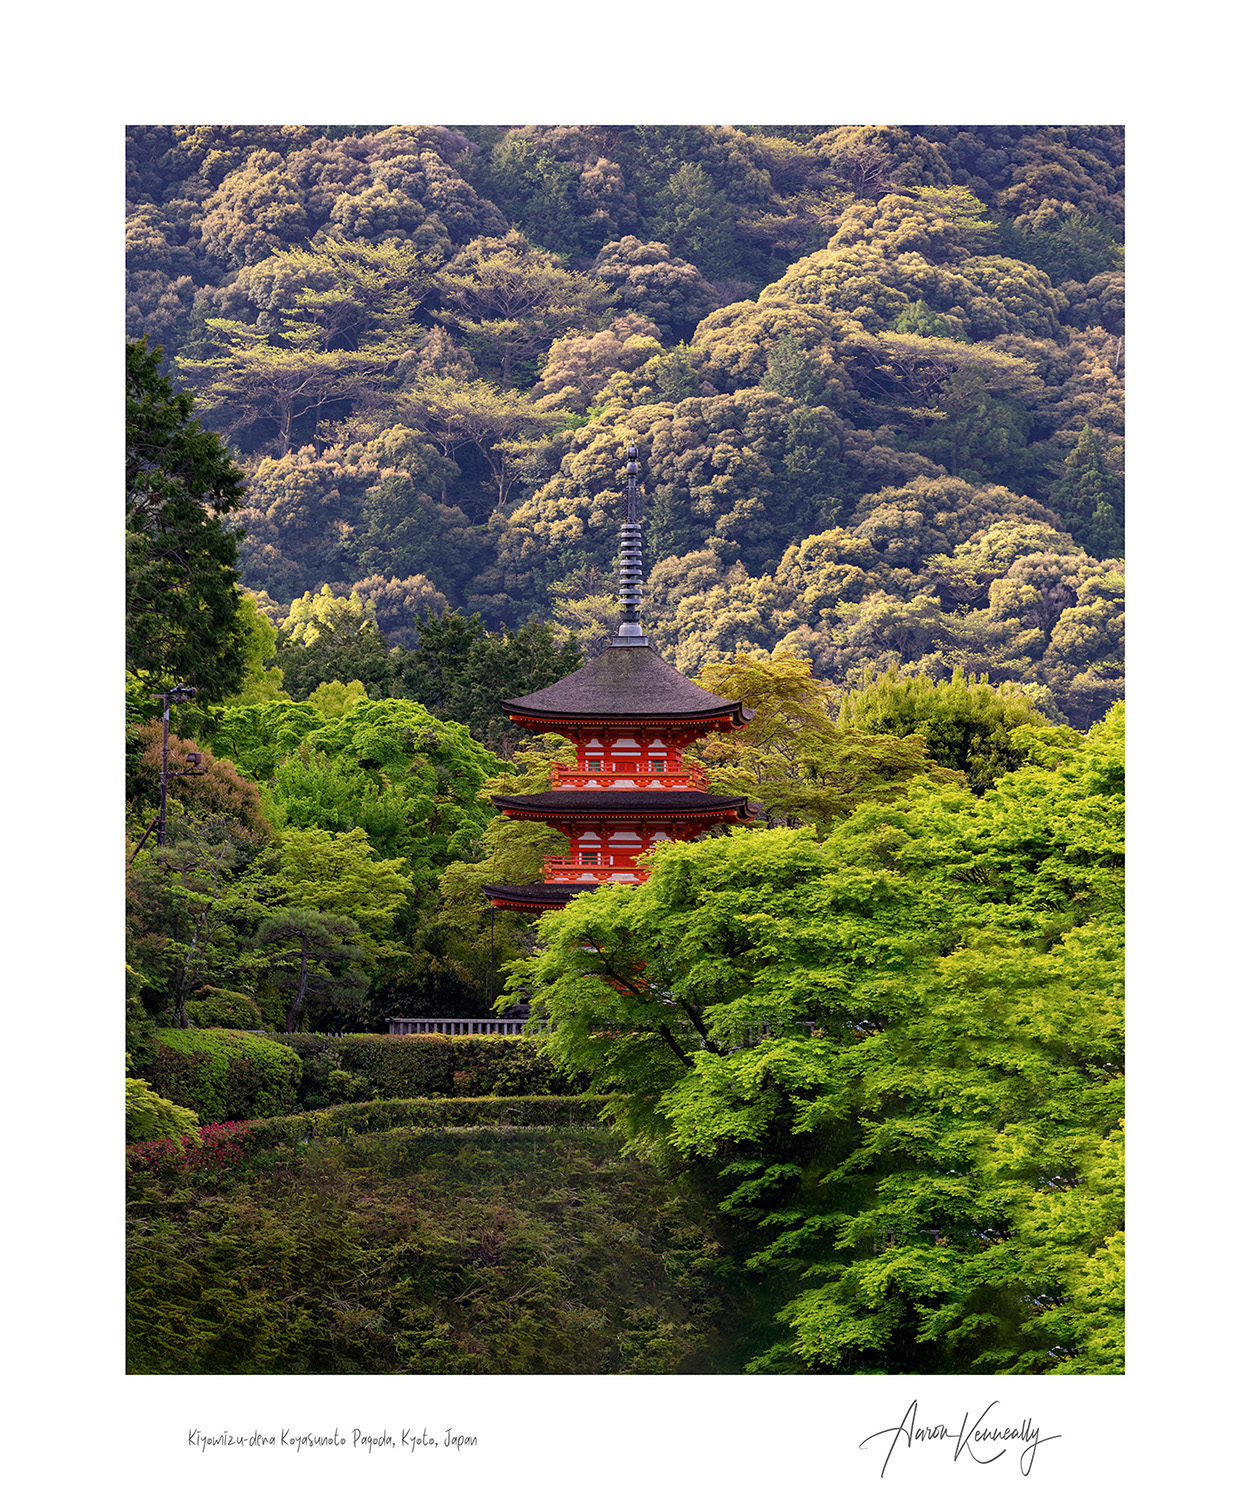 Kiyomizu-dera Koyasunoto Pagoda, Kyoto